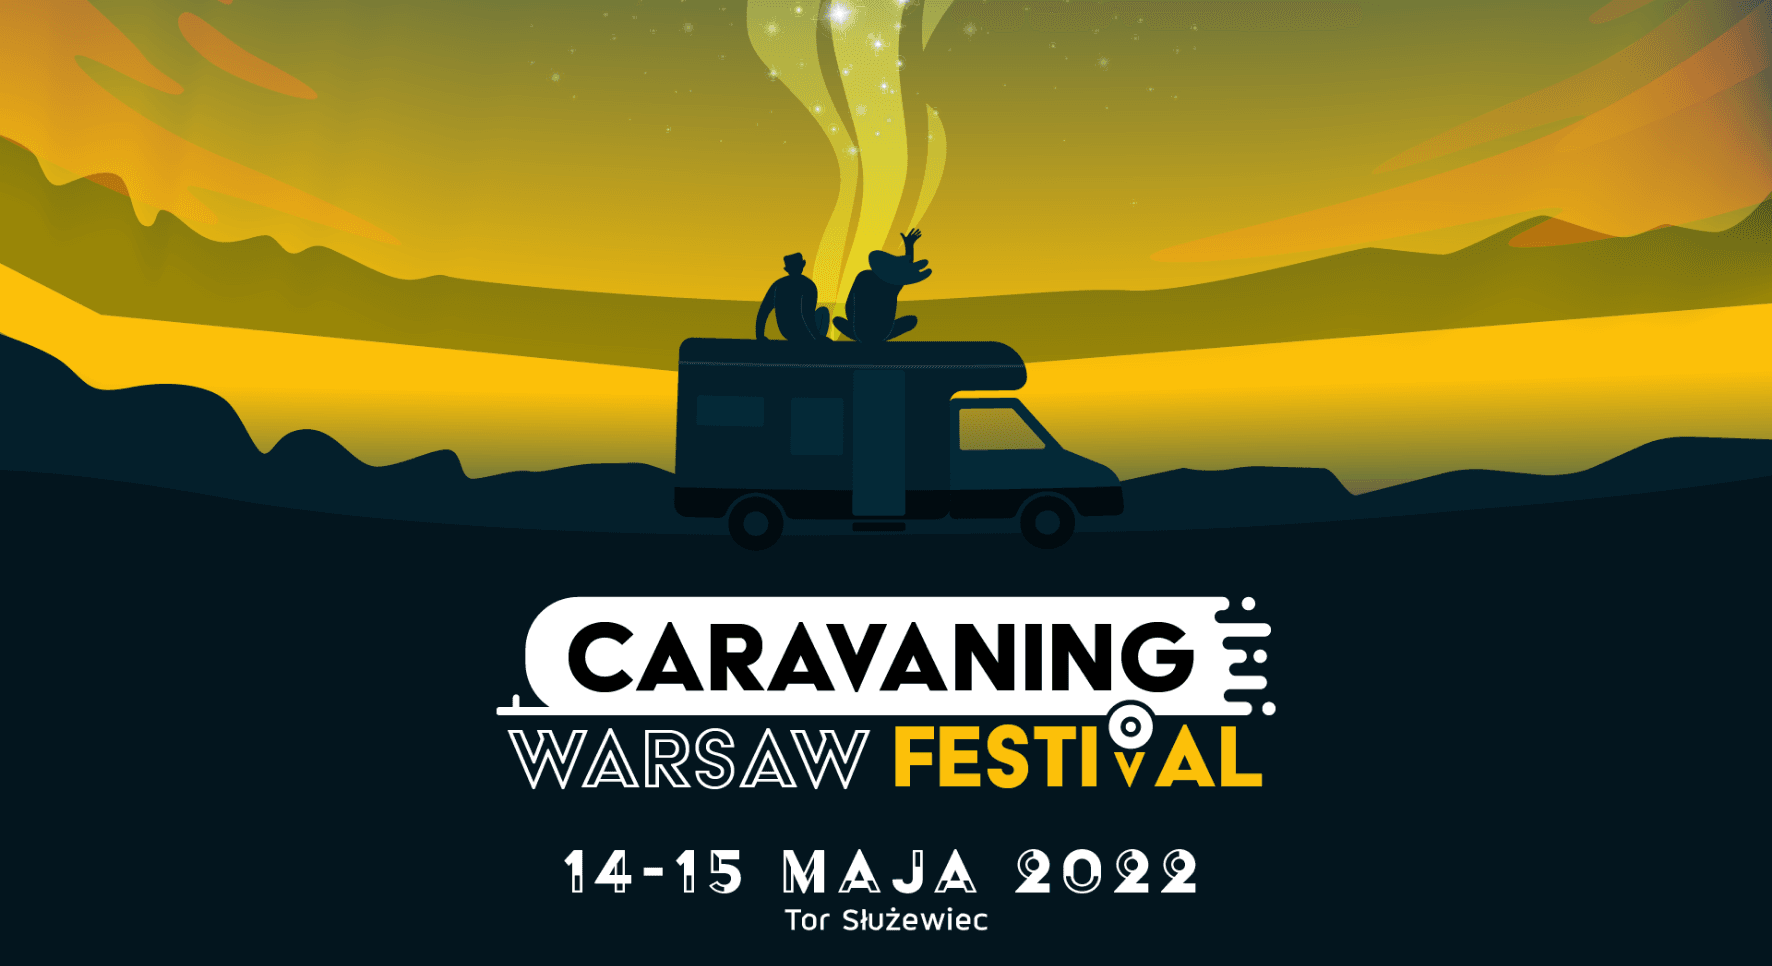 Caravaning Warsaw Festival –  nowy format imprezy caravaningowej w Warszawie już w maju! – główne zdjęcie